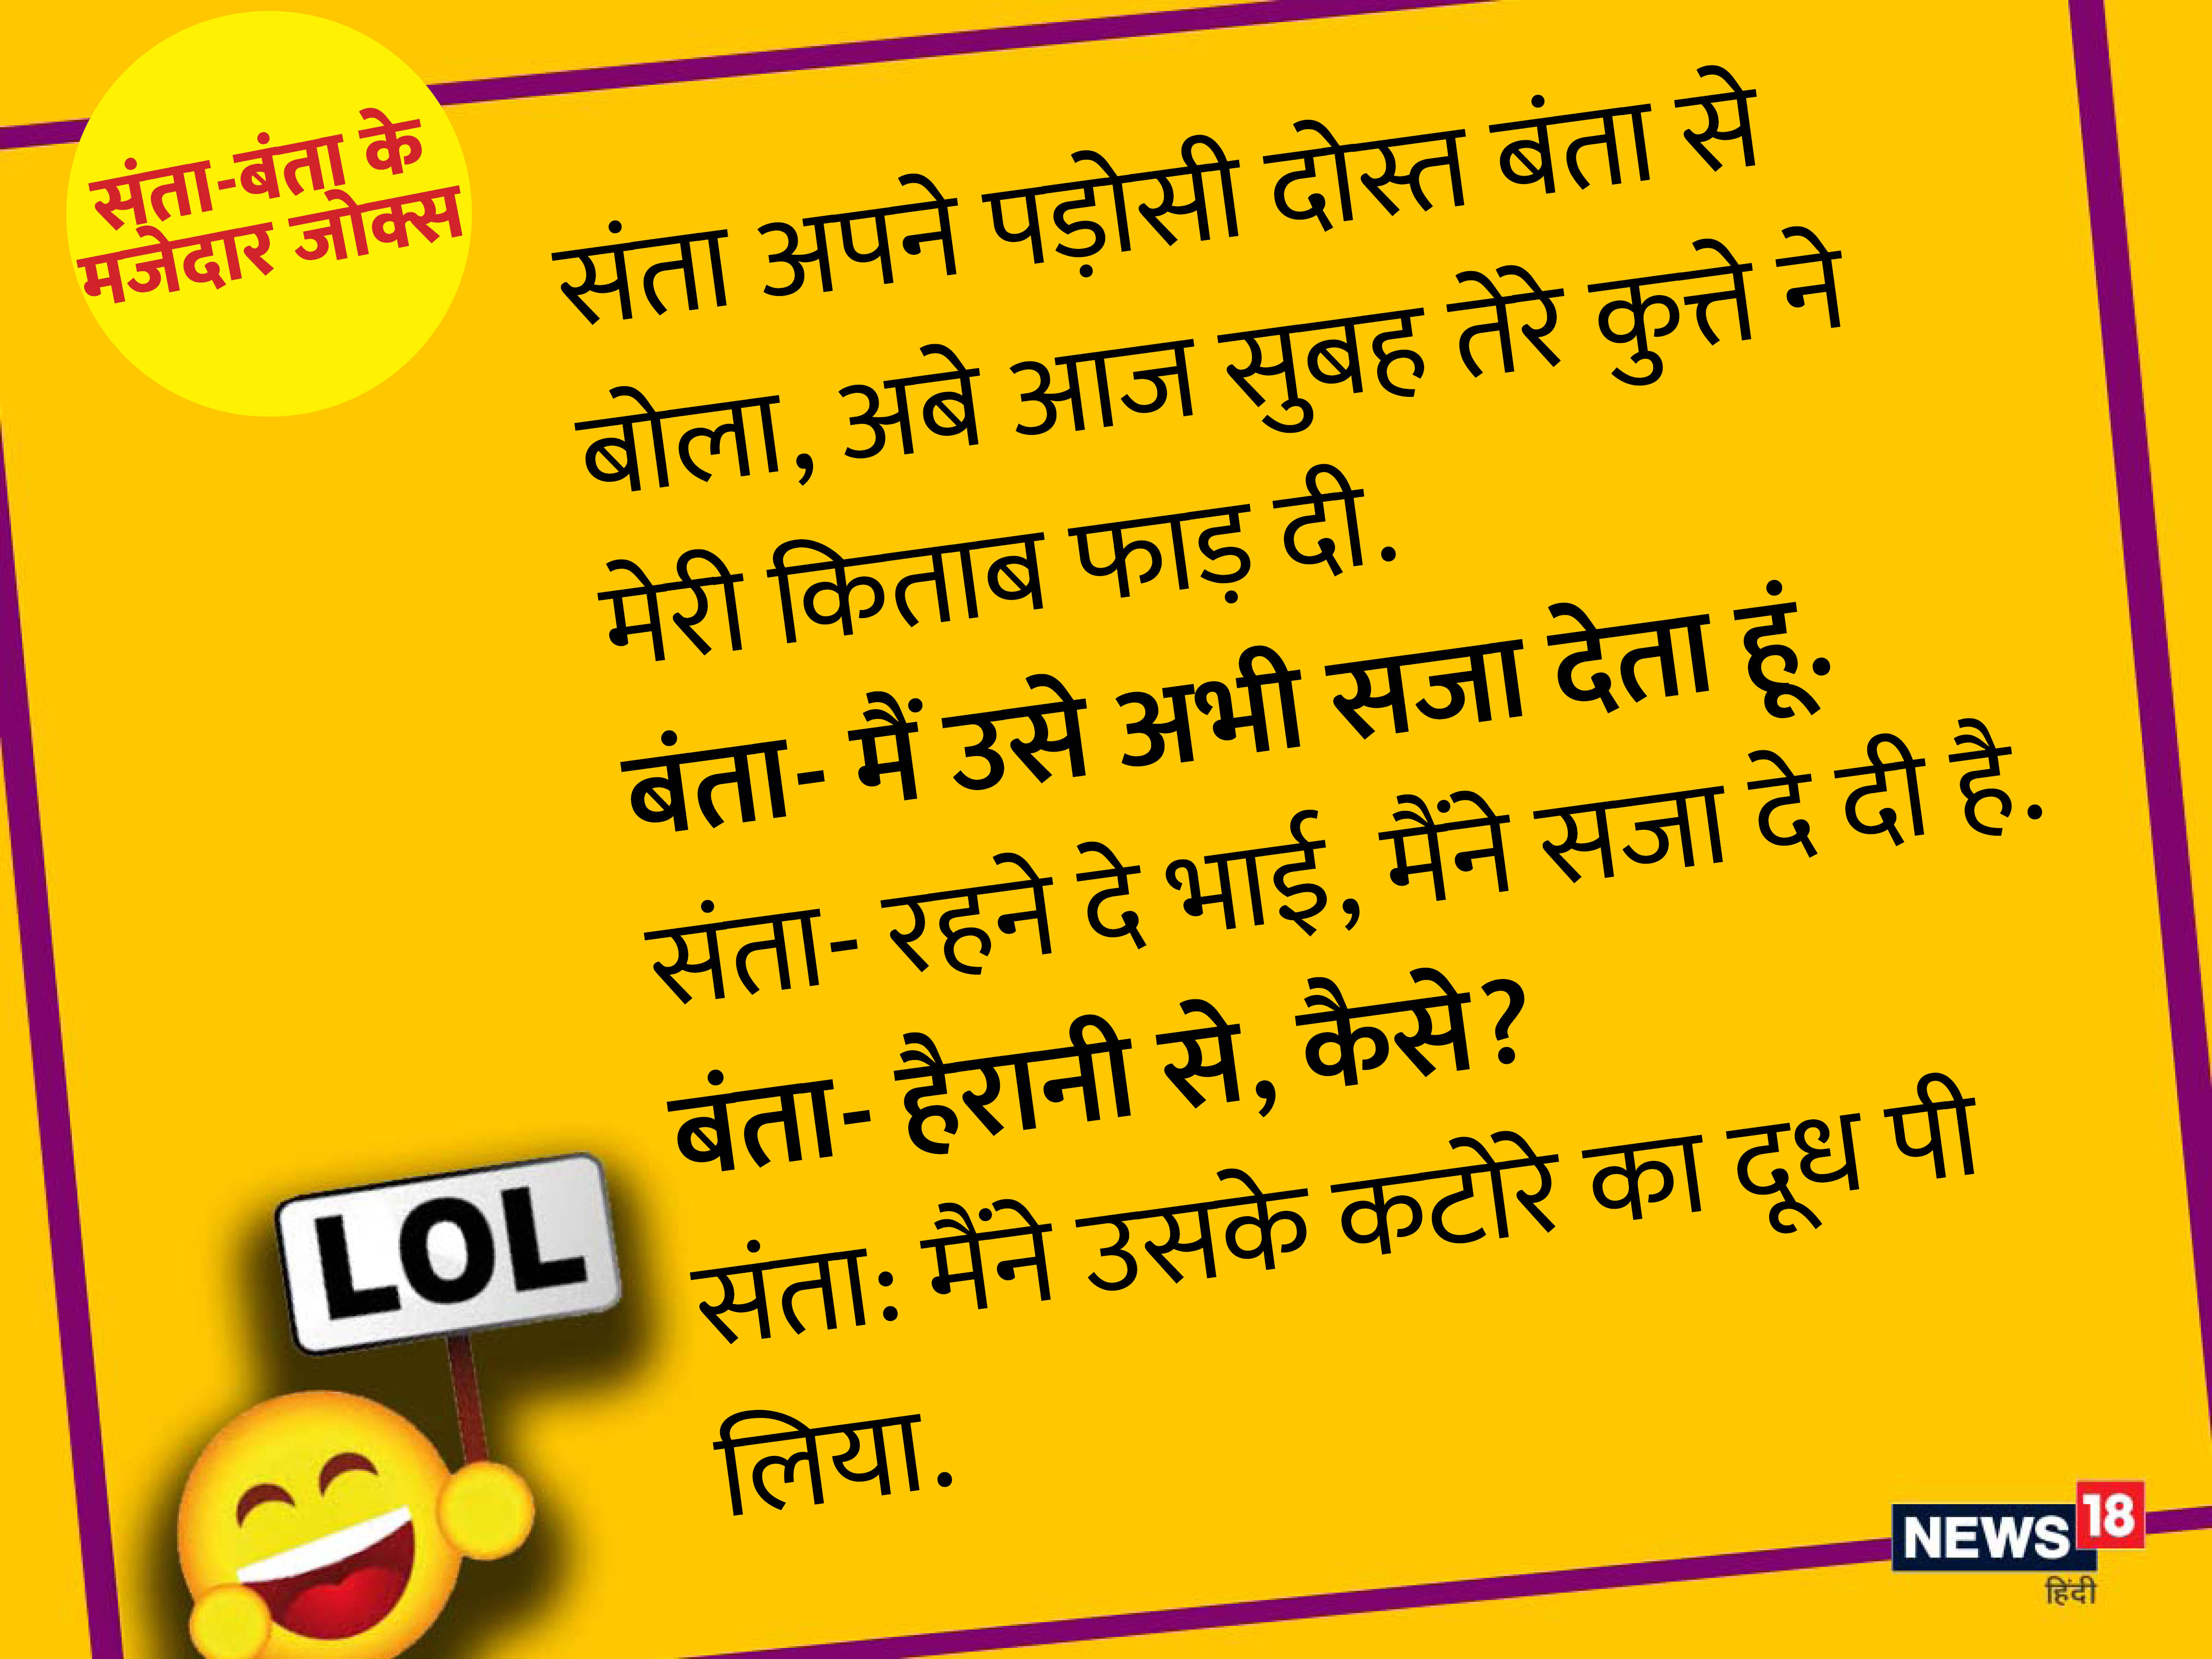 हंसा-हंसा कर लोटपोट कर देंगे संता-बंता के ये मजेदार जोक्स - santa banta funny  jokes chutkule in hindi mt – News18 हिंदी